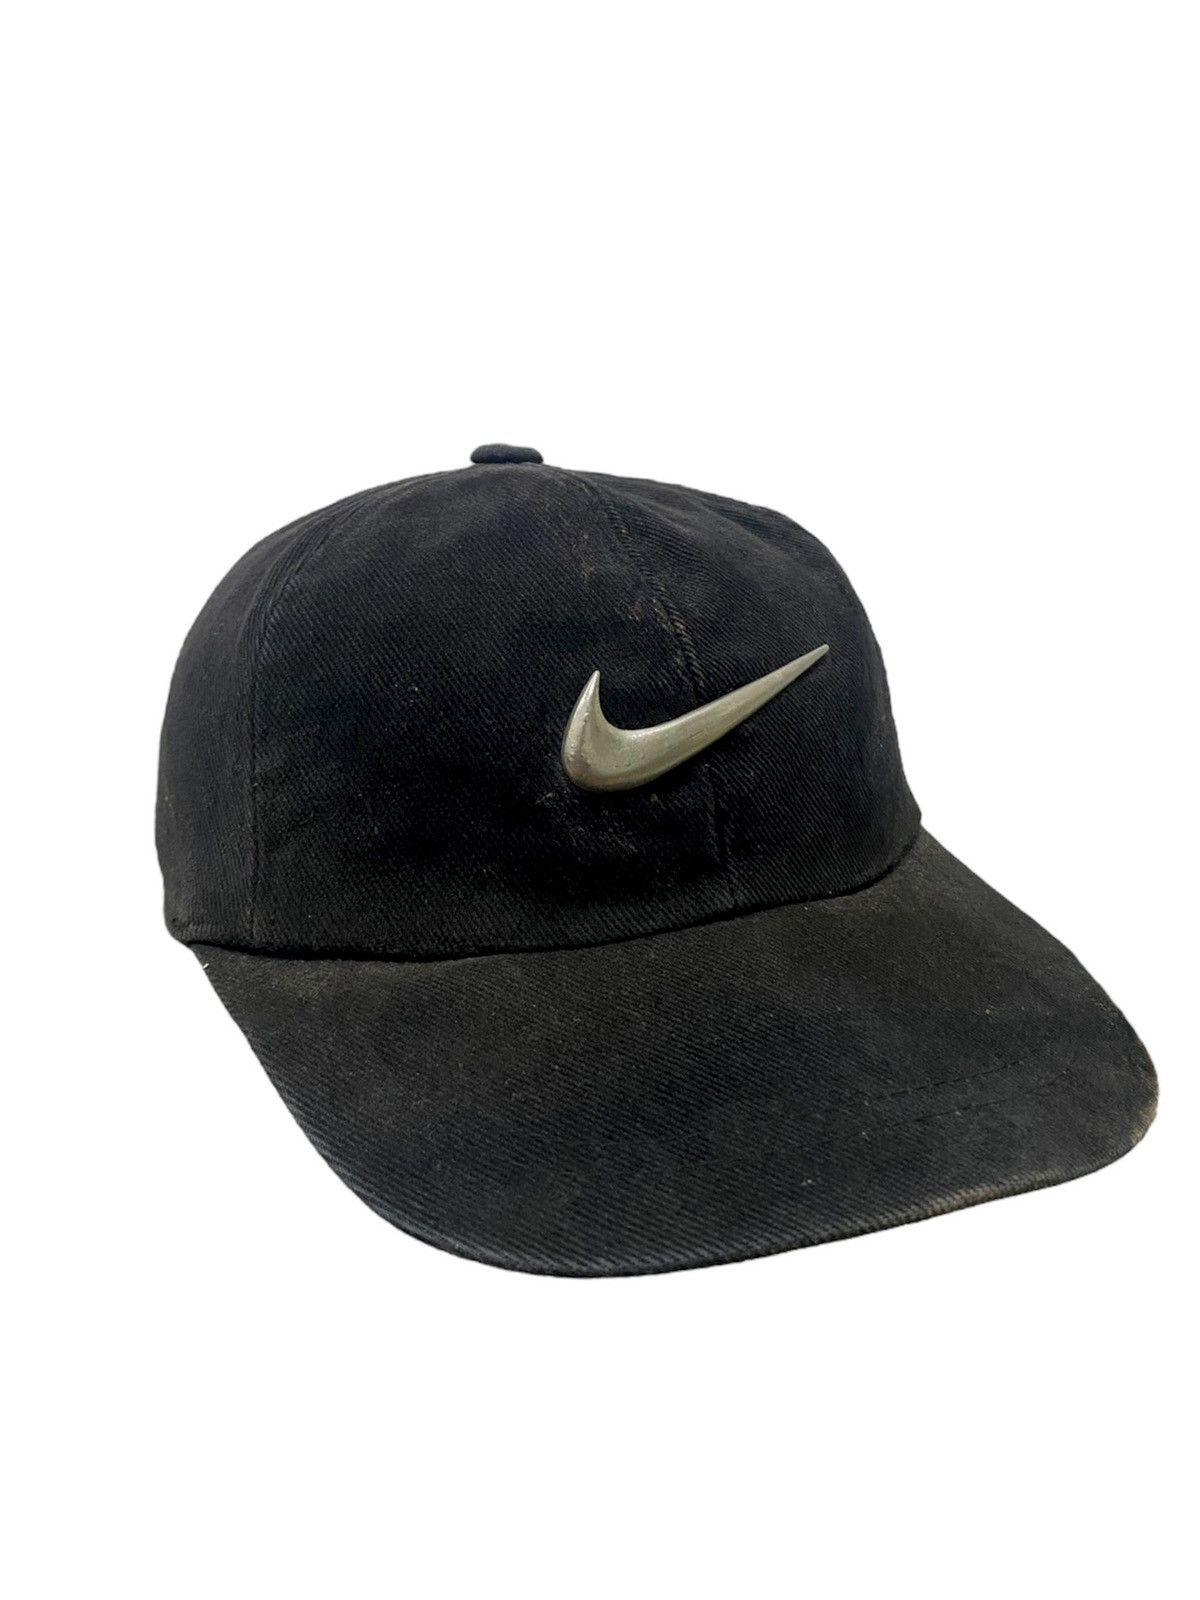 Nike Vintage Metal Swoosh Cap - 1